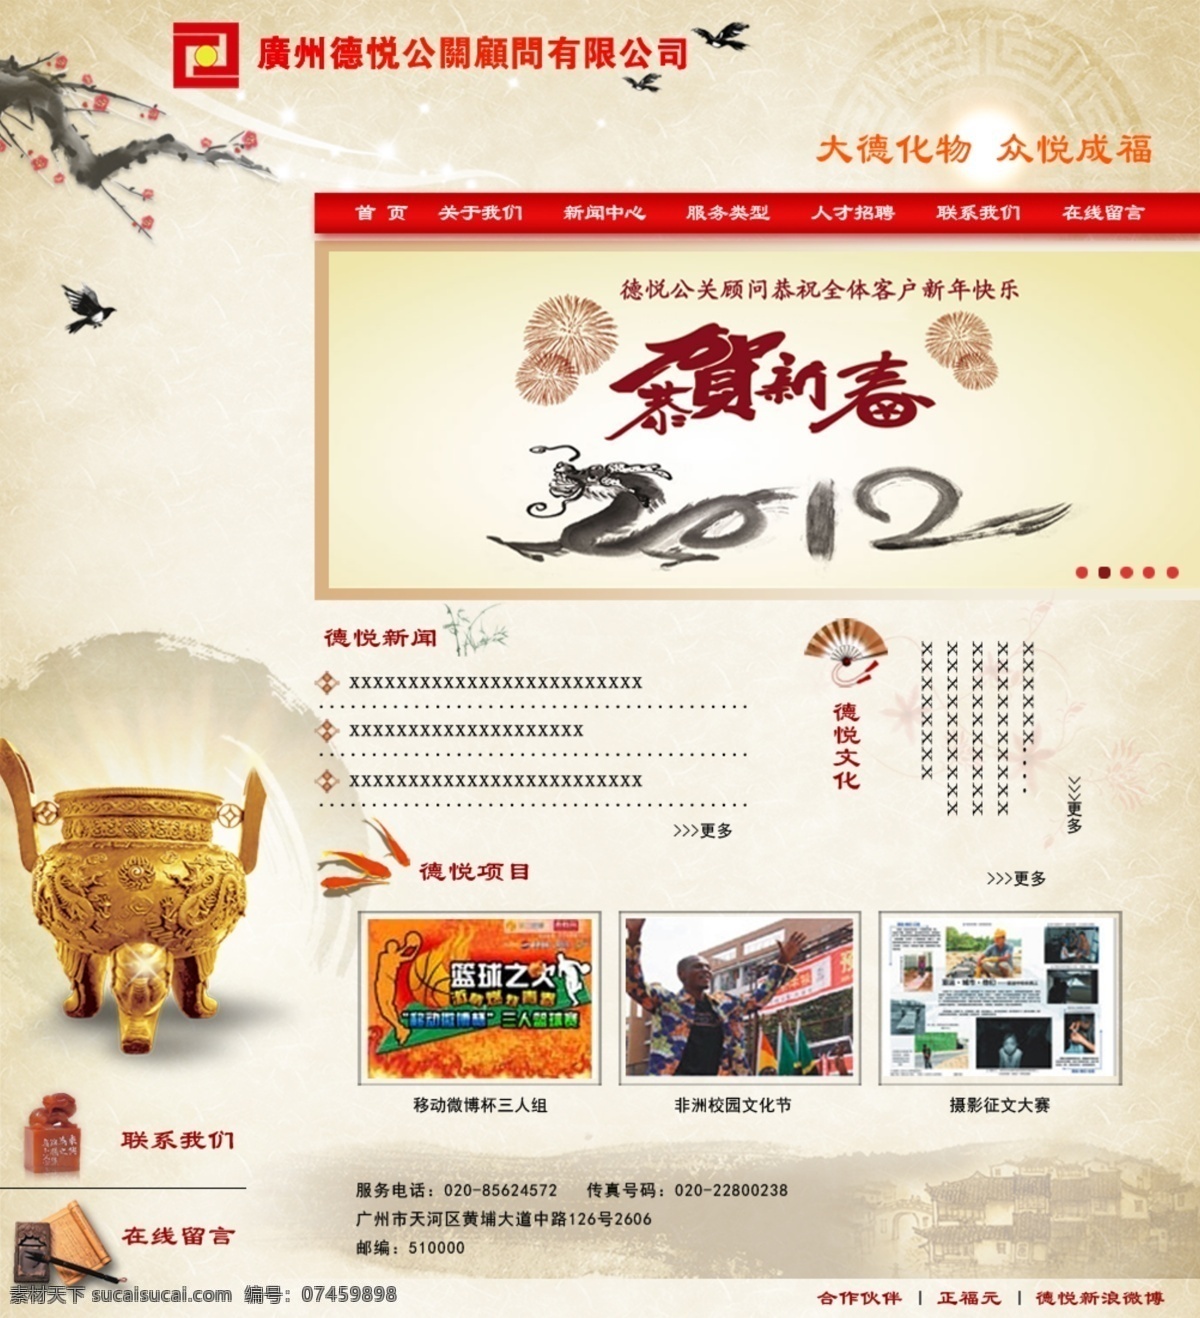 中国 风 网页 公司网页 古典网页 网页模板 源文件 中国风 中国风网页 网页设计 中文模版